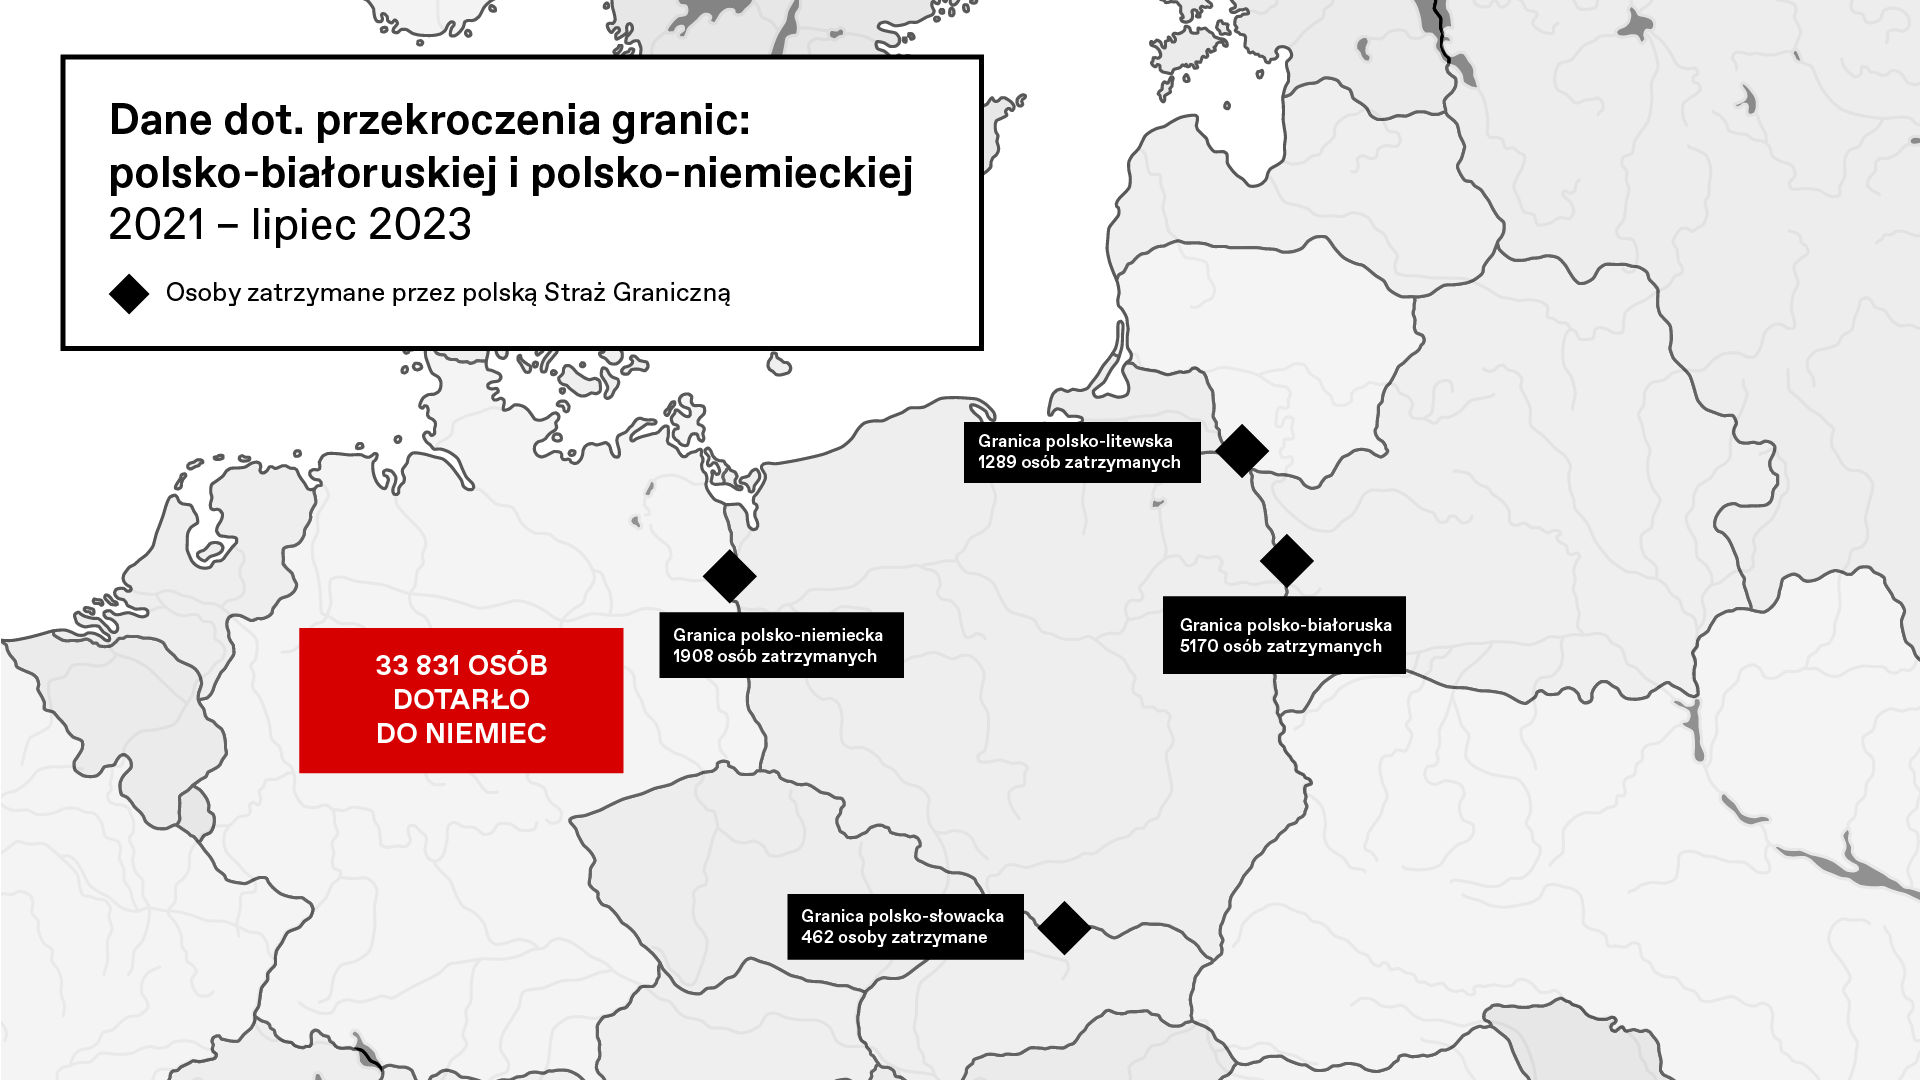 mapa z liczbami pokazuje, ile osób z granicy polski-bialoruskiej trafiło do Niemiec